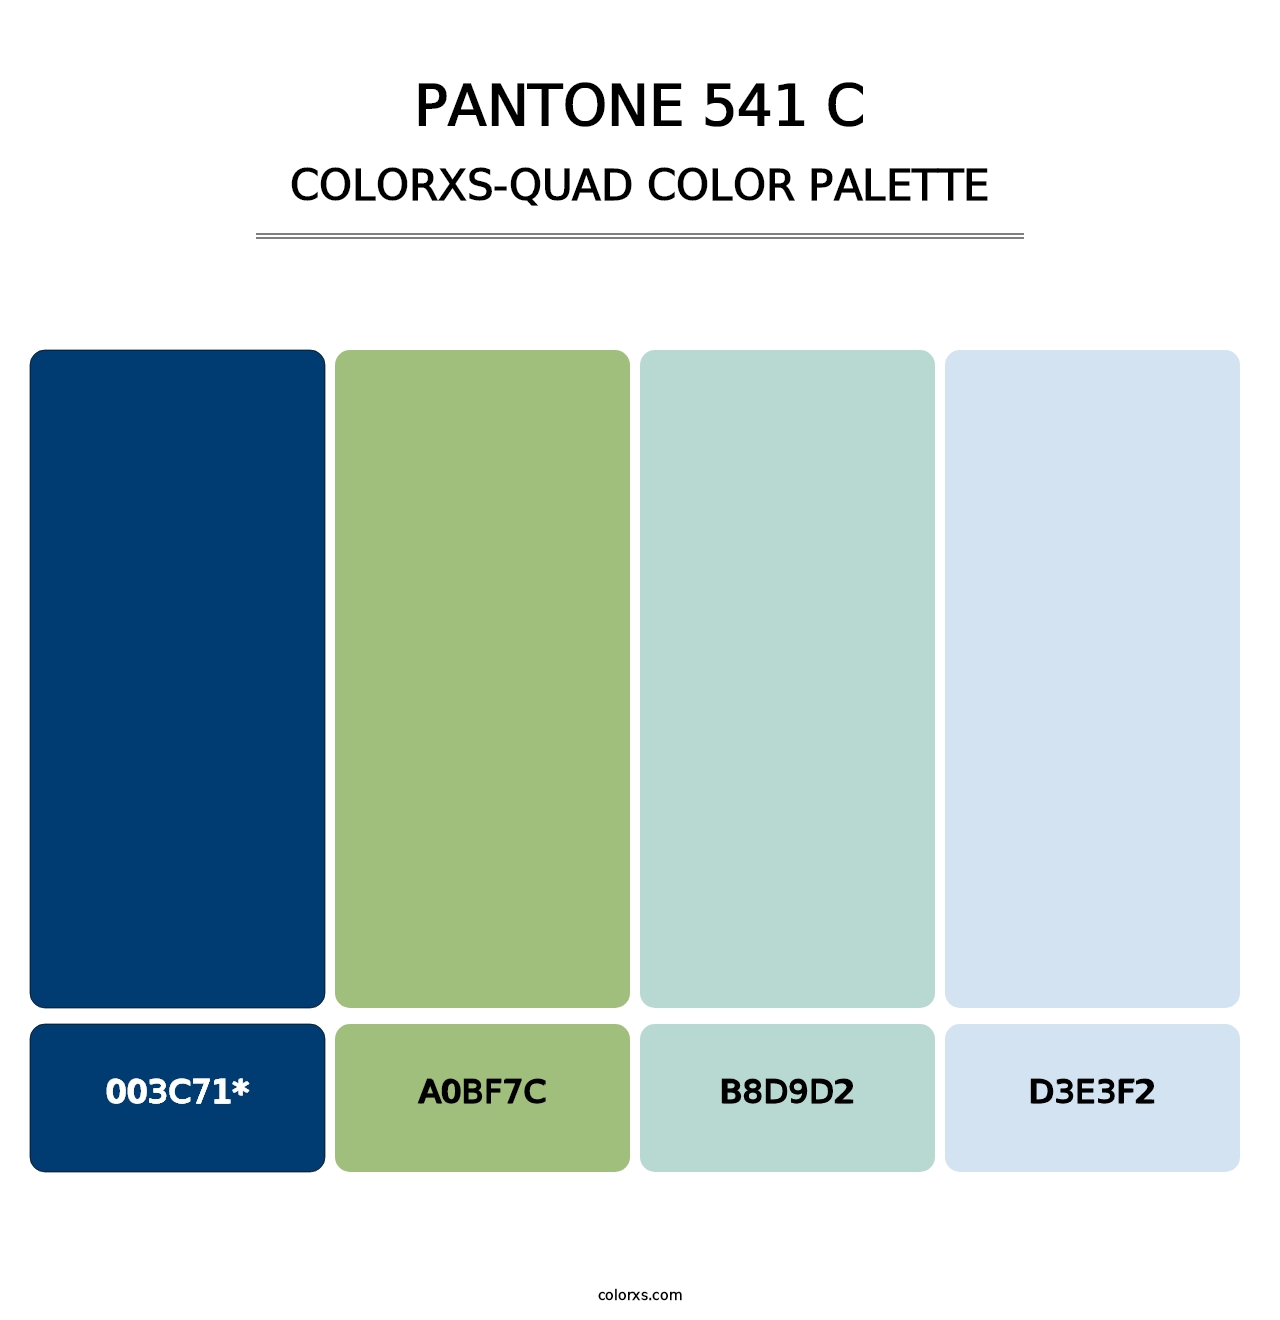 PANTONE 541 C - Colorxs Quad Palette